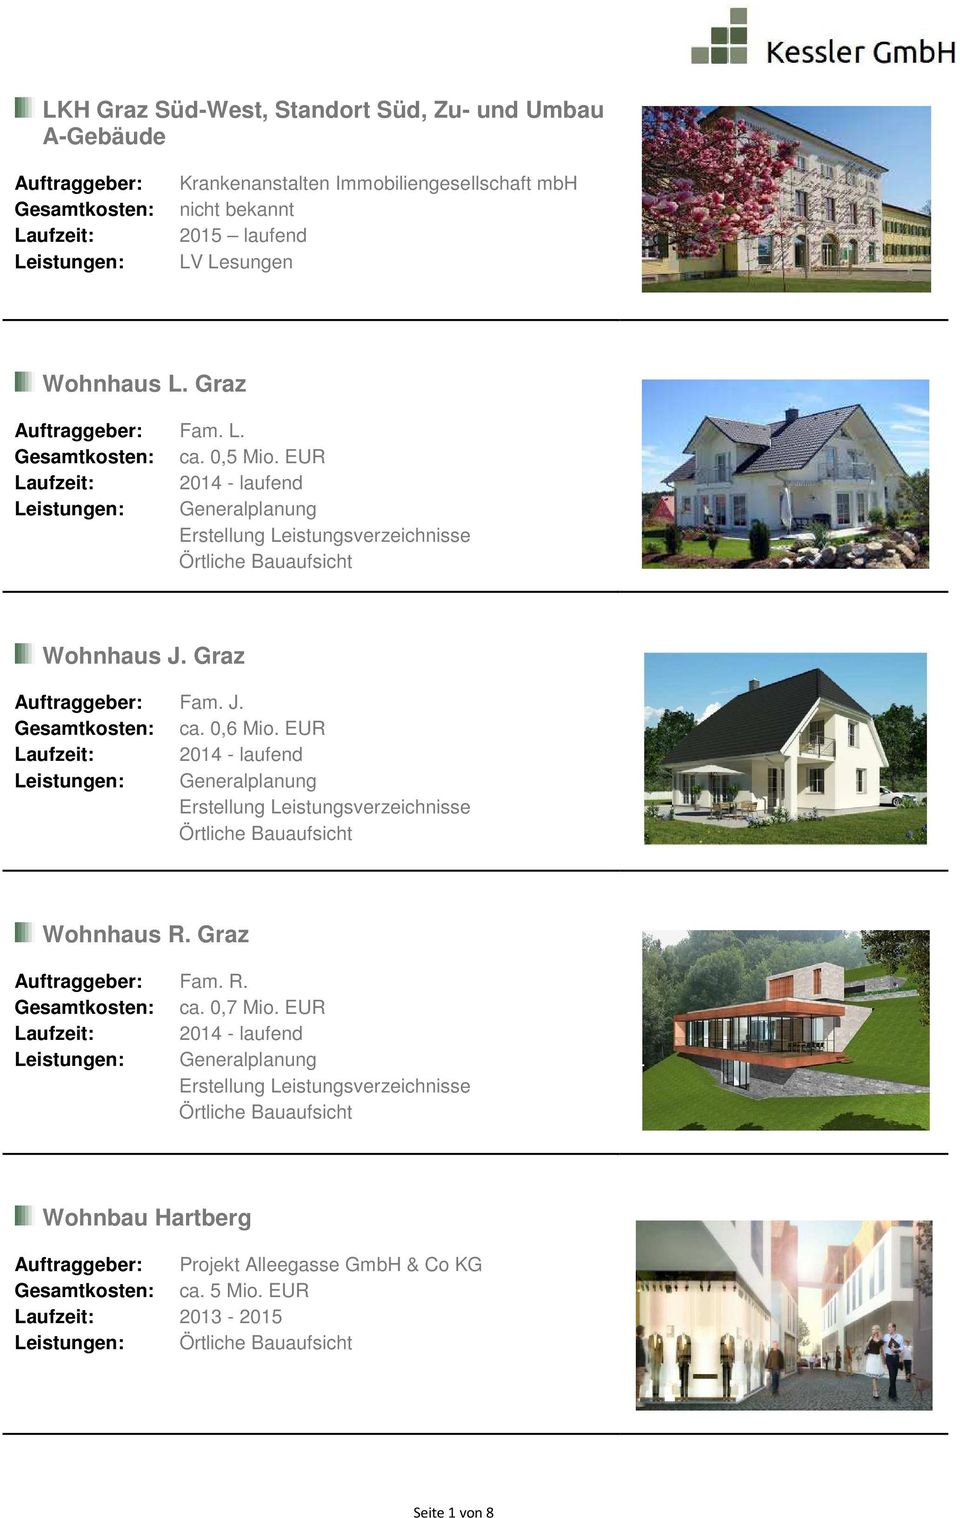 EUR Laufzeit: 2014 - laufend Leistungen: Generalplanung Erstellung Leistungsverzeichnisse Wohnhaus R. Graz Auftraggeber: Fam. R. Gesamtkosten: ca. 0,7 Mio.